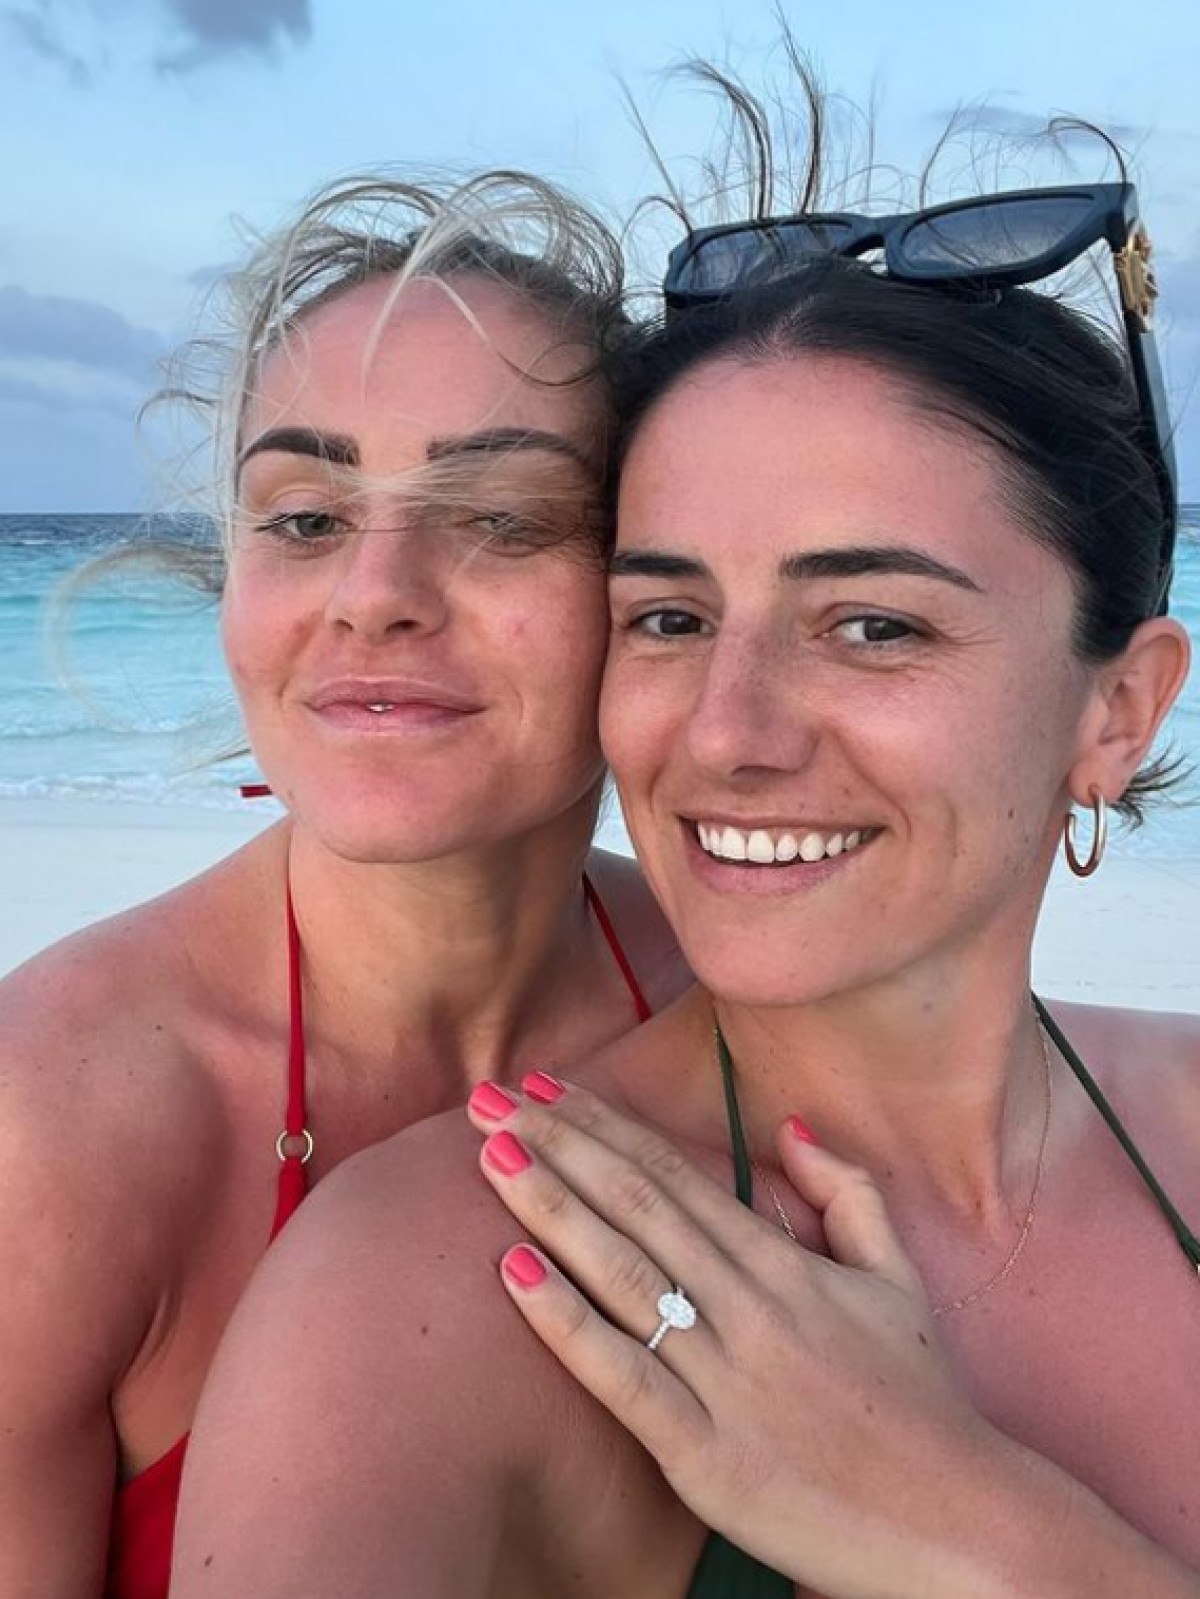 Ellie Carpenter et Danielle van de Donk footballeuses lesbiennes annoncent leur fiançaille